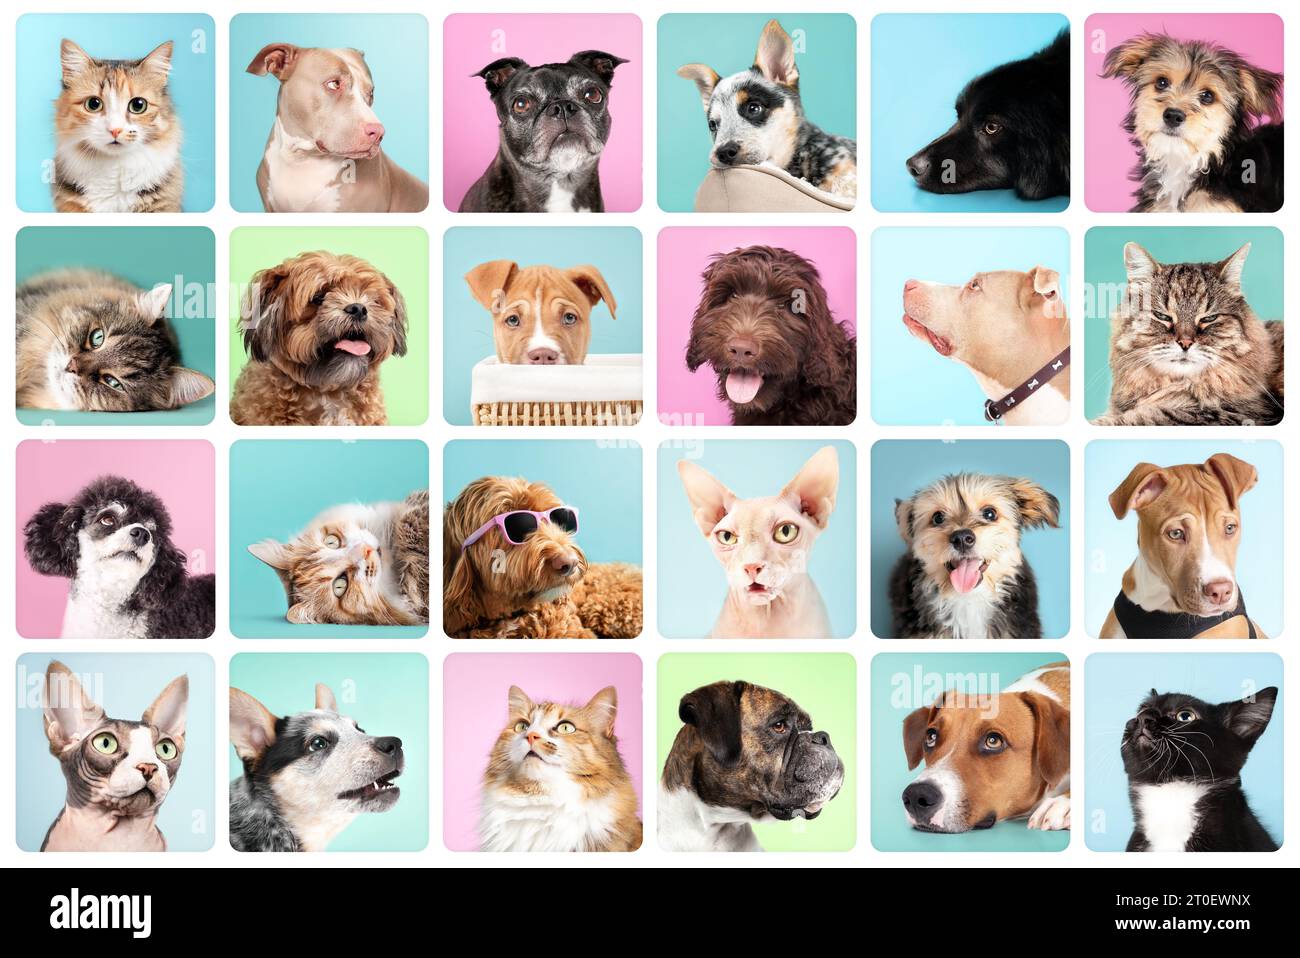 Porträtkollektion für Katzen und Hunde mit farbigem Hintergrund. Niedliches Set von Tierkopfaufnahmen. Labradoodle, Boxer, Poodle, Morkie, Shichon, Pitbull, Harrier und Stockfoto